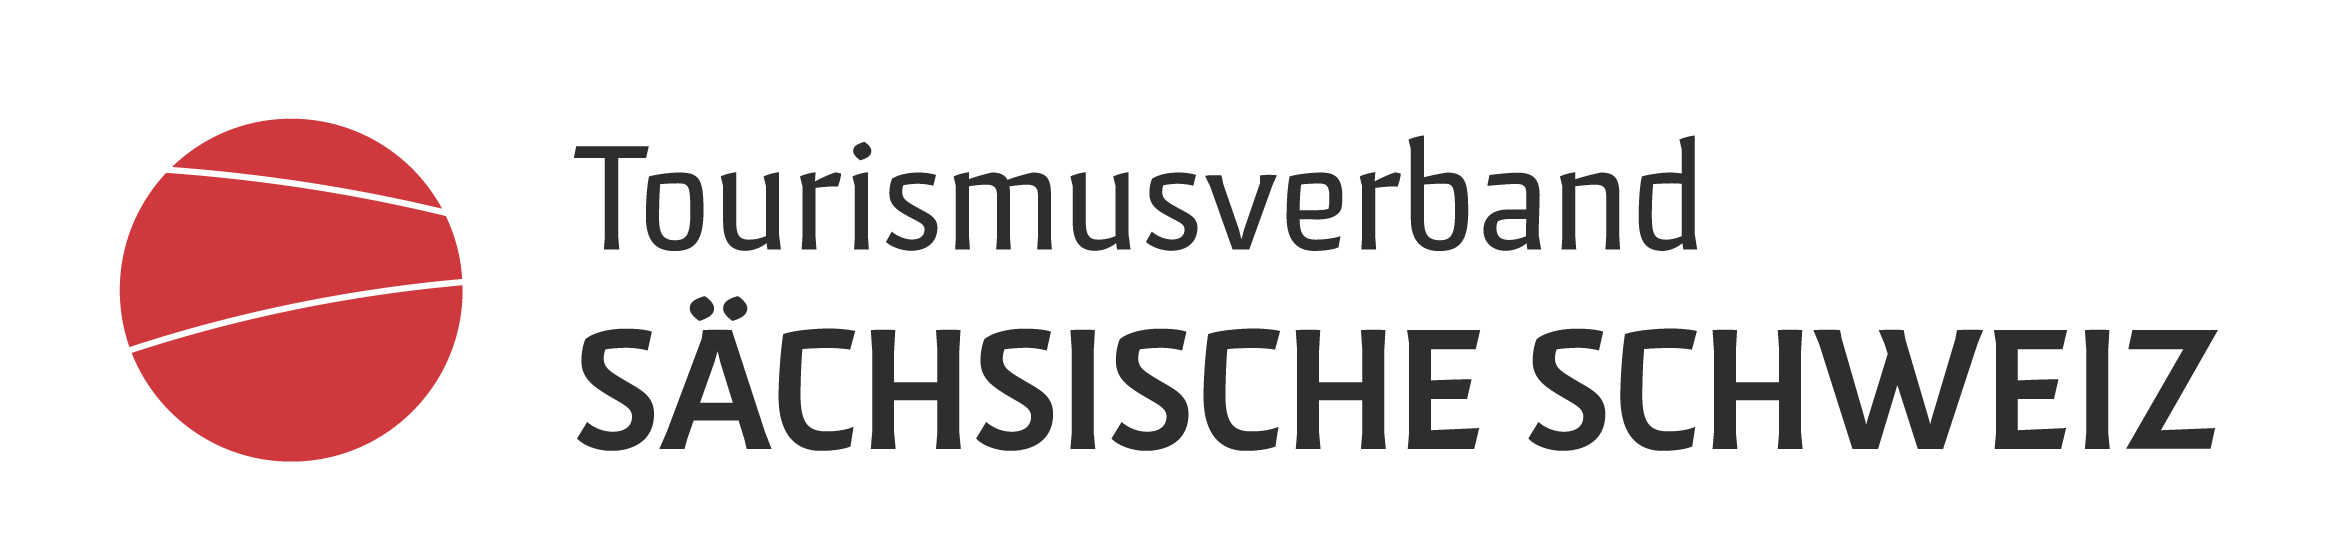 Logo Tourismusverband Sächsische Schweiz Felsenbühne Rathen